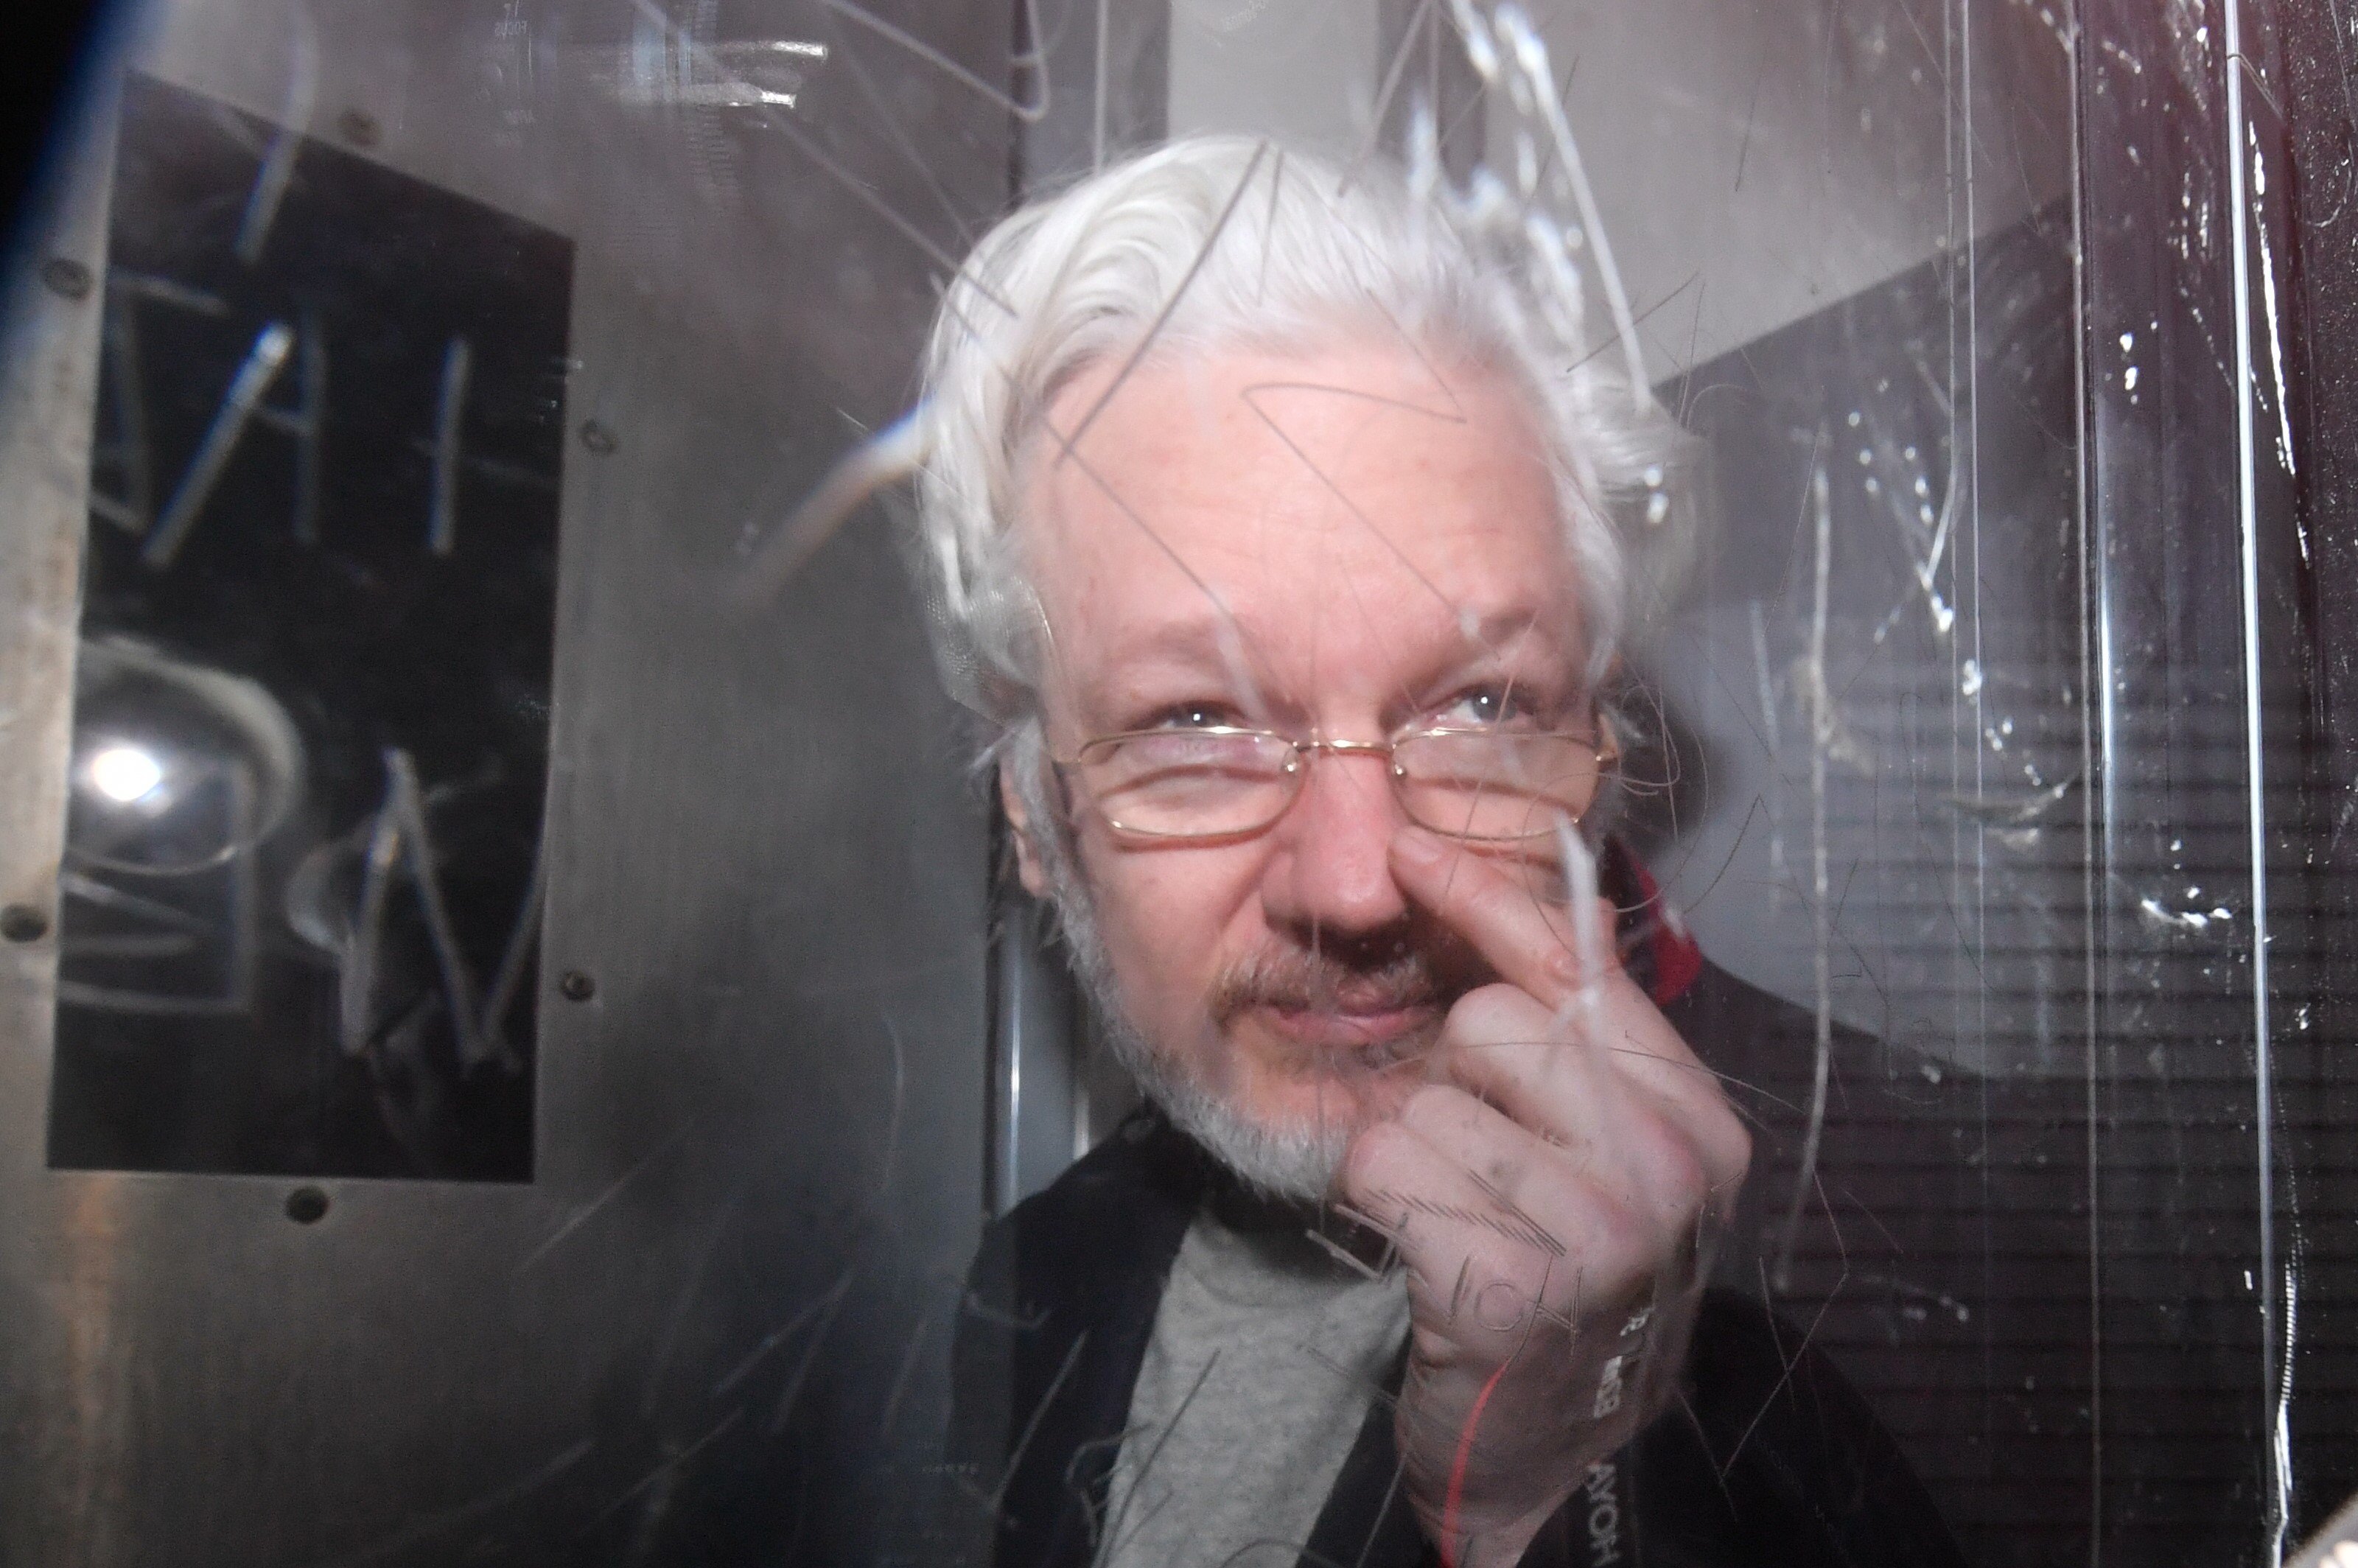 Los EE.UU. piden la extradición de Assange: lo acusan de poner vidas "en riesgo"